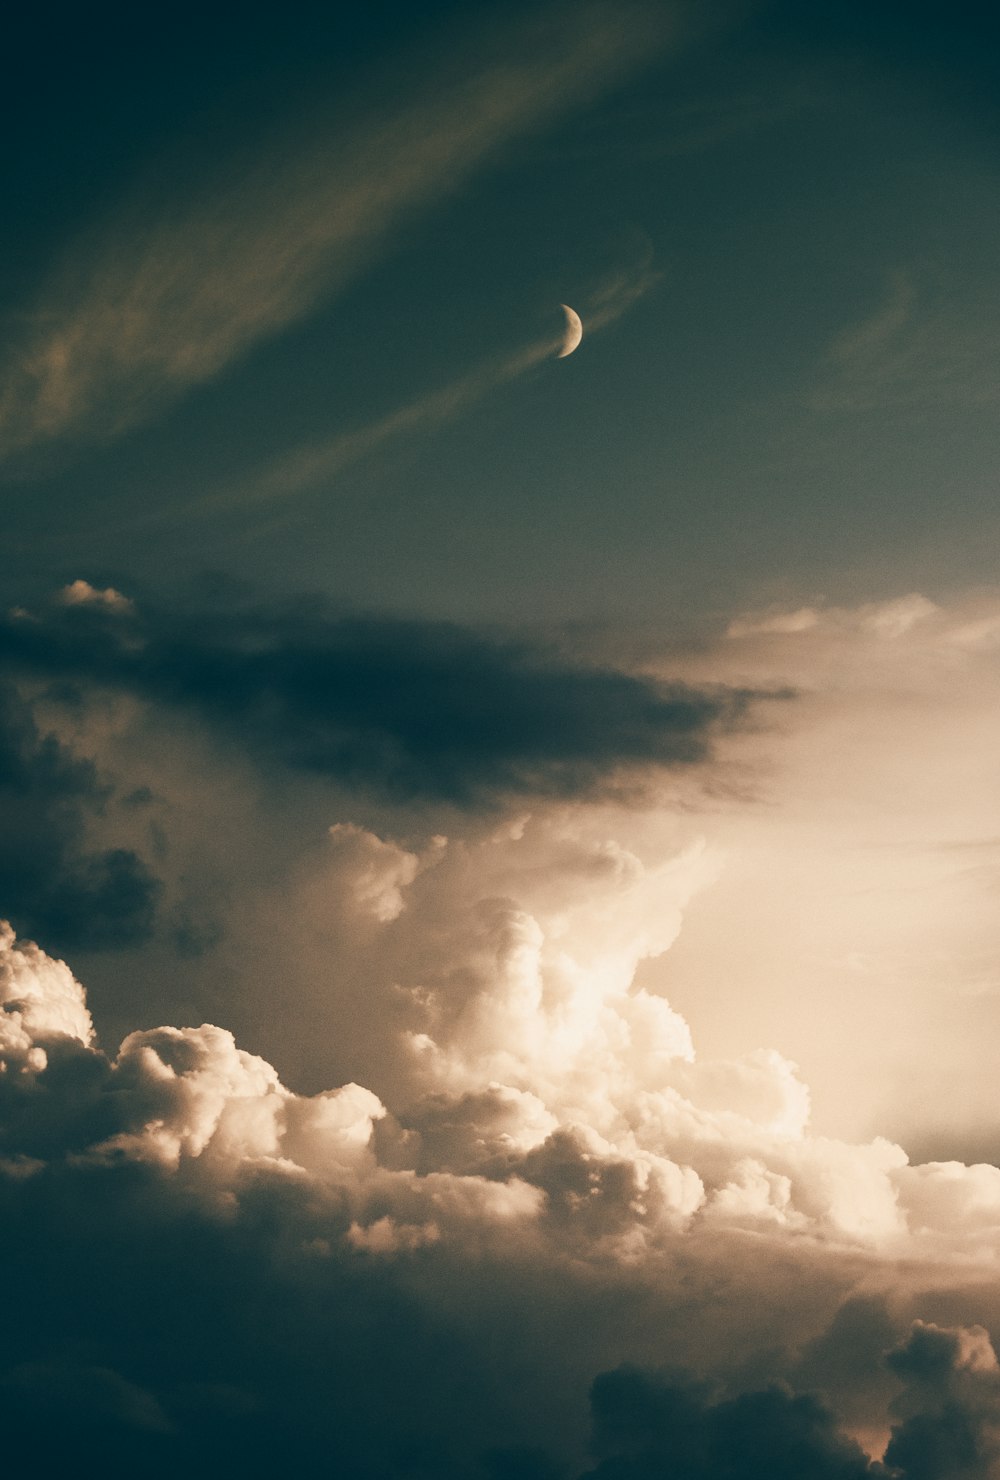 luna creciente y nubes